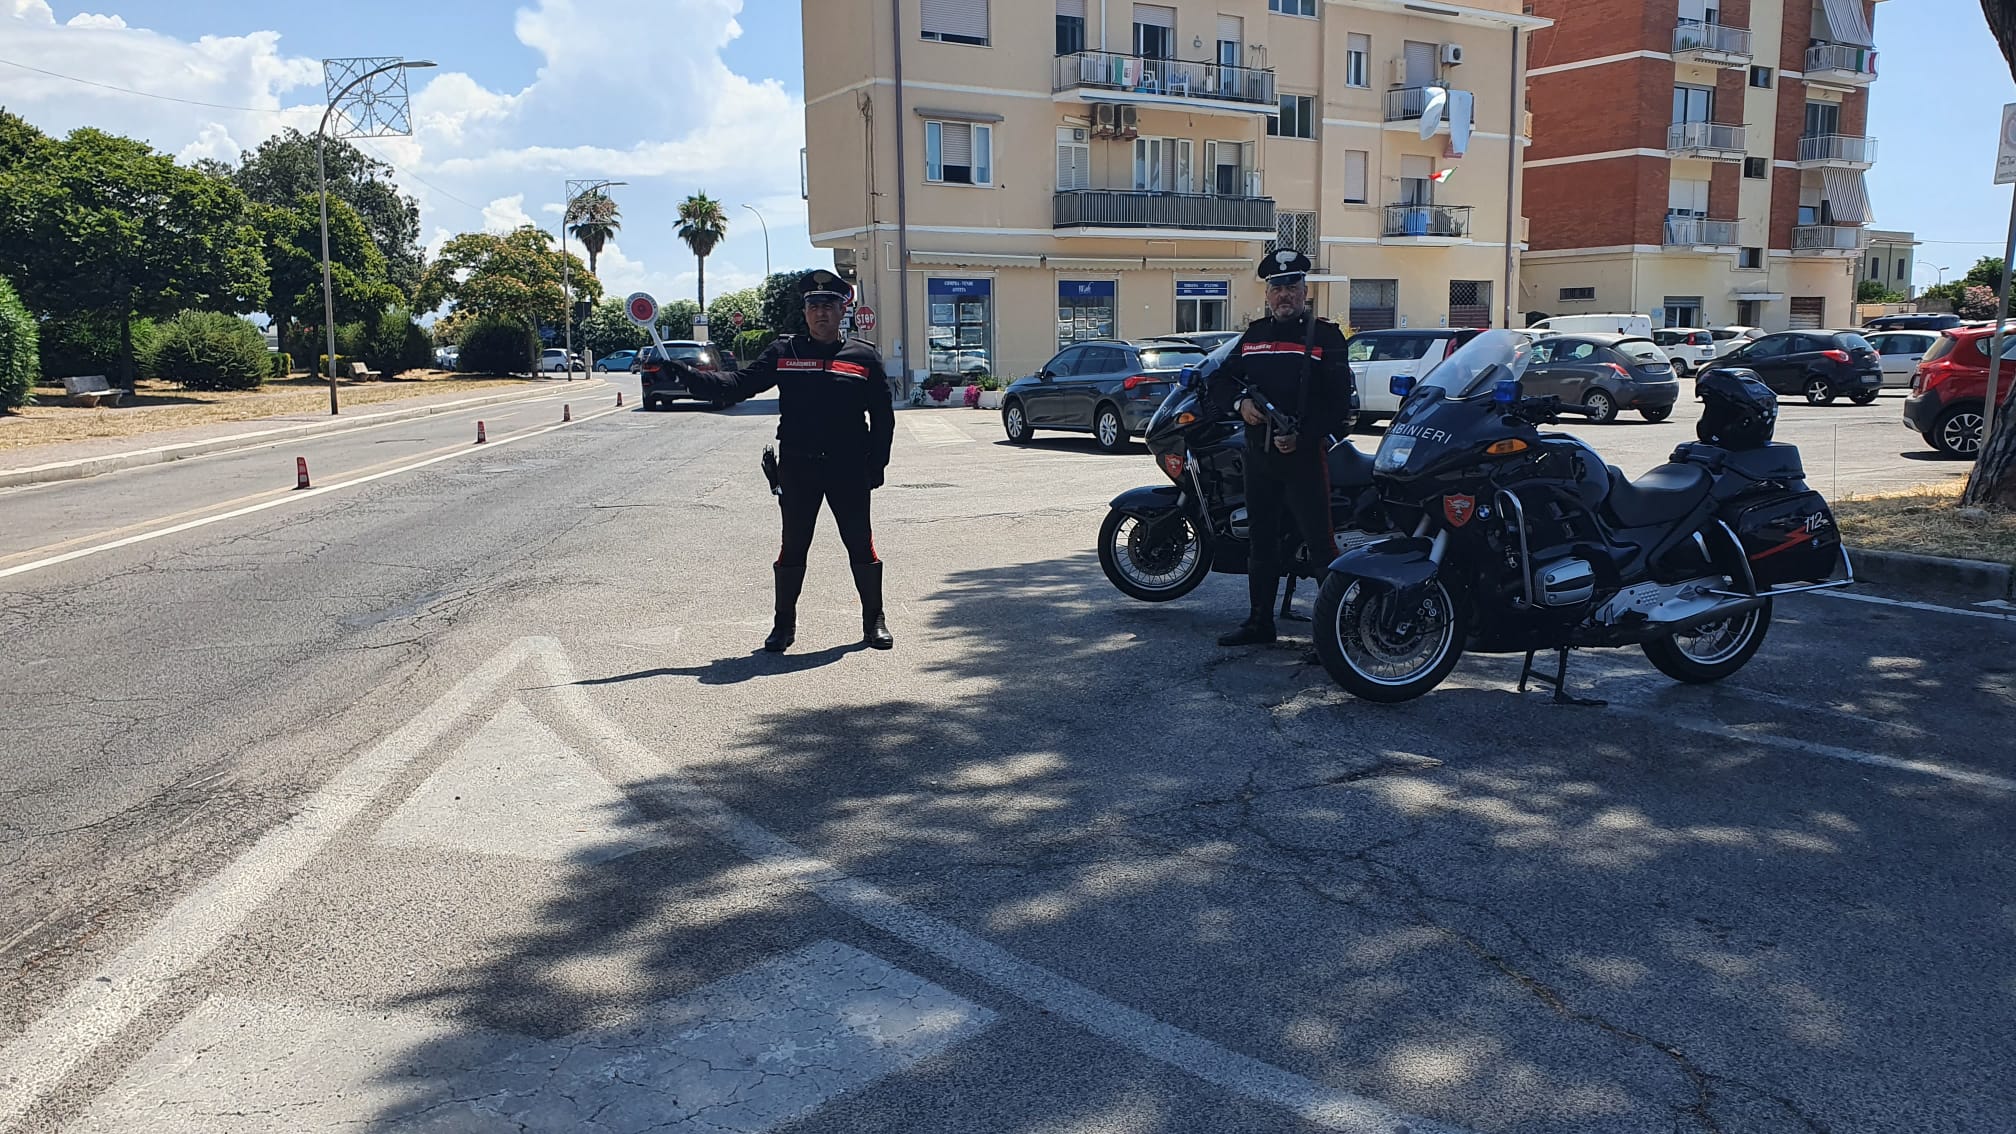 i Carabinieri del norm di Terracina